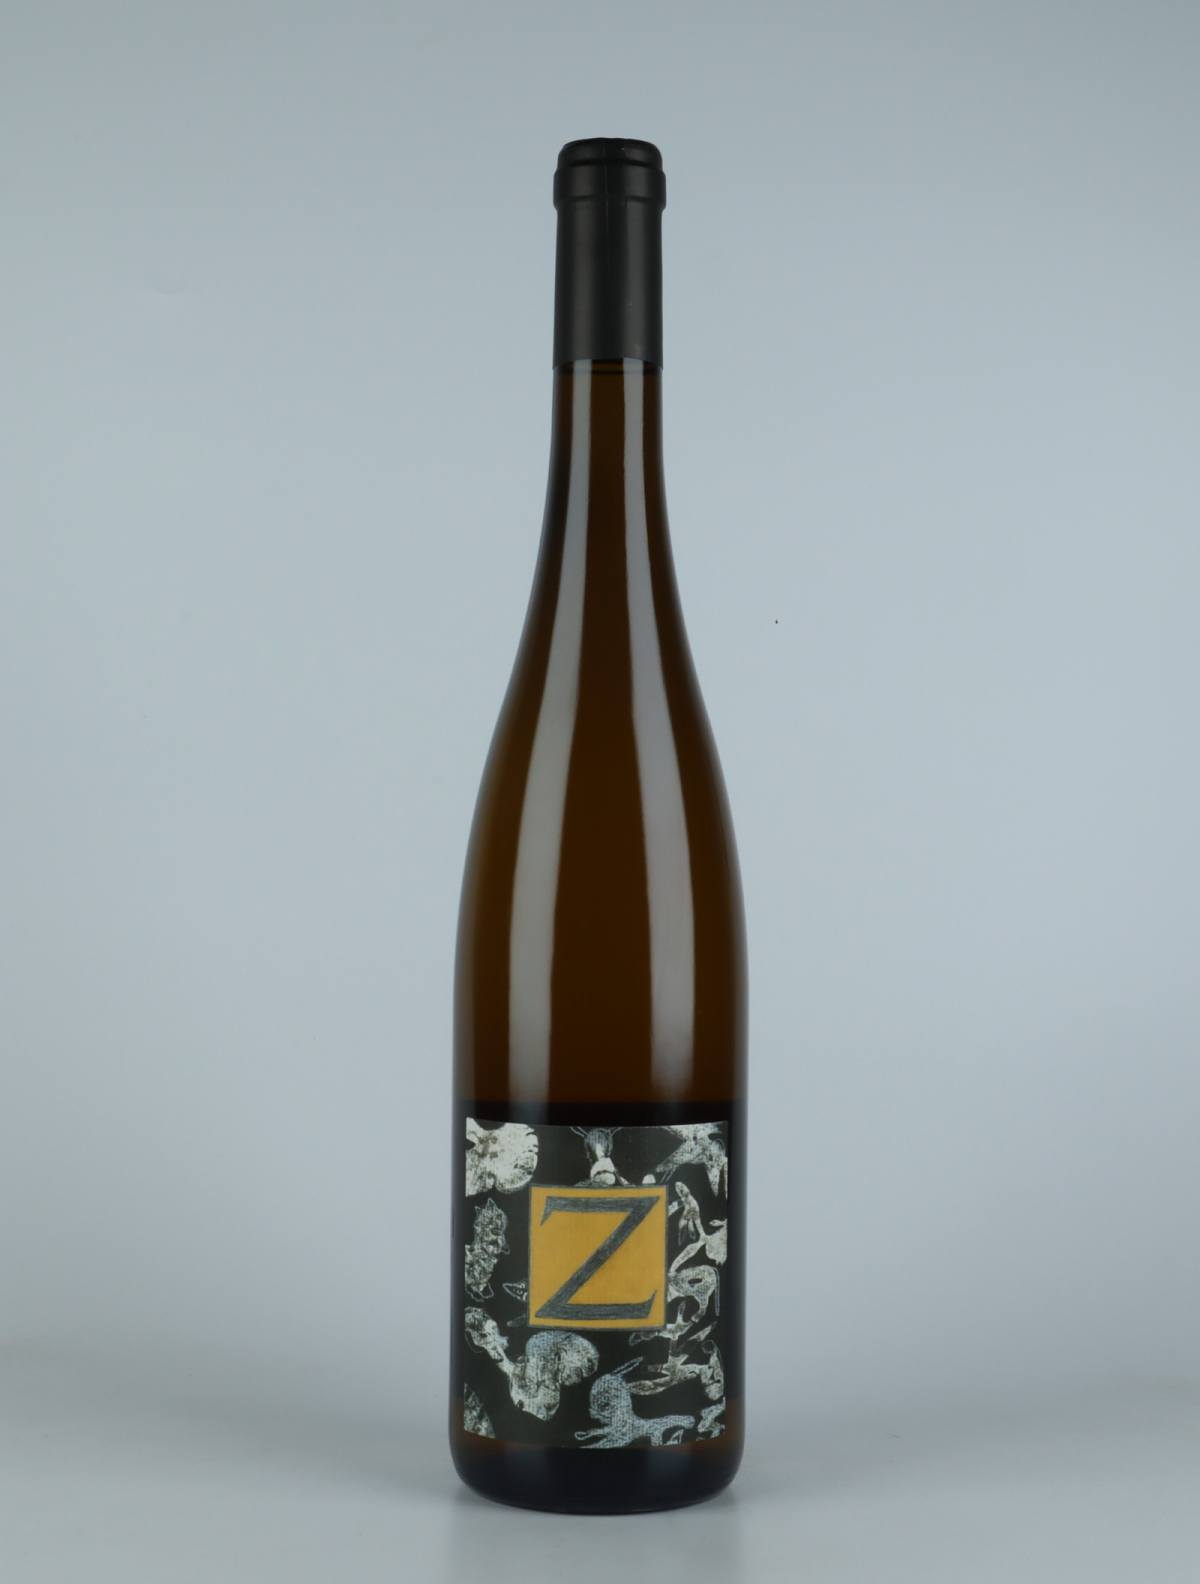 En flaske 2019 Riesling - Grand Cru Zotzenberg Hvidvin fra Domaine Rietsch, Alsace i Frankrig